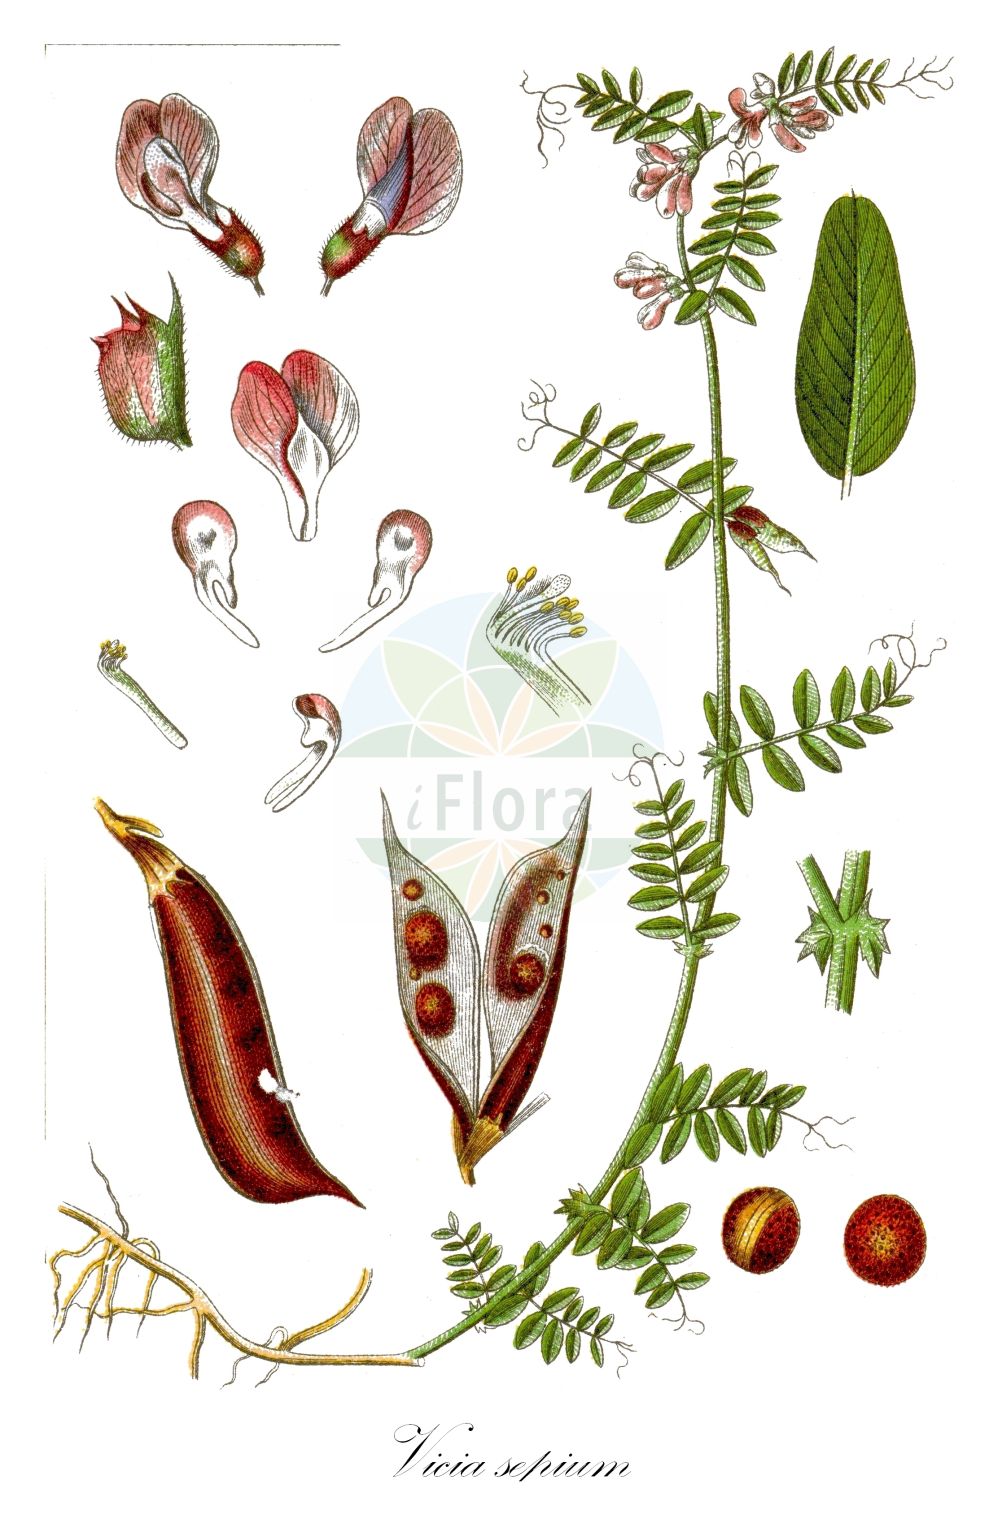 Historische Abbildung von Vicia sepium (Zaun-Wicke - Bush Vetch). Das Bild zeigt Blatt, Bluete, Frucht und Same. ---- Historical Drawing of Vicia sepium (Zaun-Wicke - Bush Vetch). The image is showing leaf, flower, fruit and seed.(Vicia sepium,Zaun-Wicke,Bush Vetch,Vicia basilei,Vicia sepium,Zaun-Wicke,Bush Vetch,Hedge Vetch,Wood Vetch,Vicia,Wicke,Vetch,Fabaceae,Schmetterlingsblütler,Pea family,Blatt,Bluete,Frucht,Same,leaf,flower,fruit,seed,Sturm (1796f))